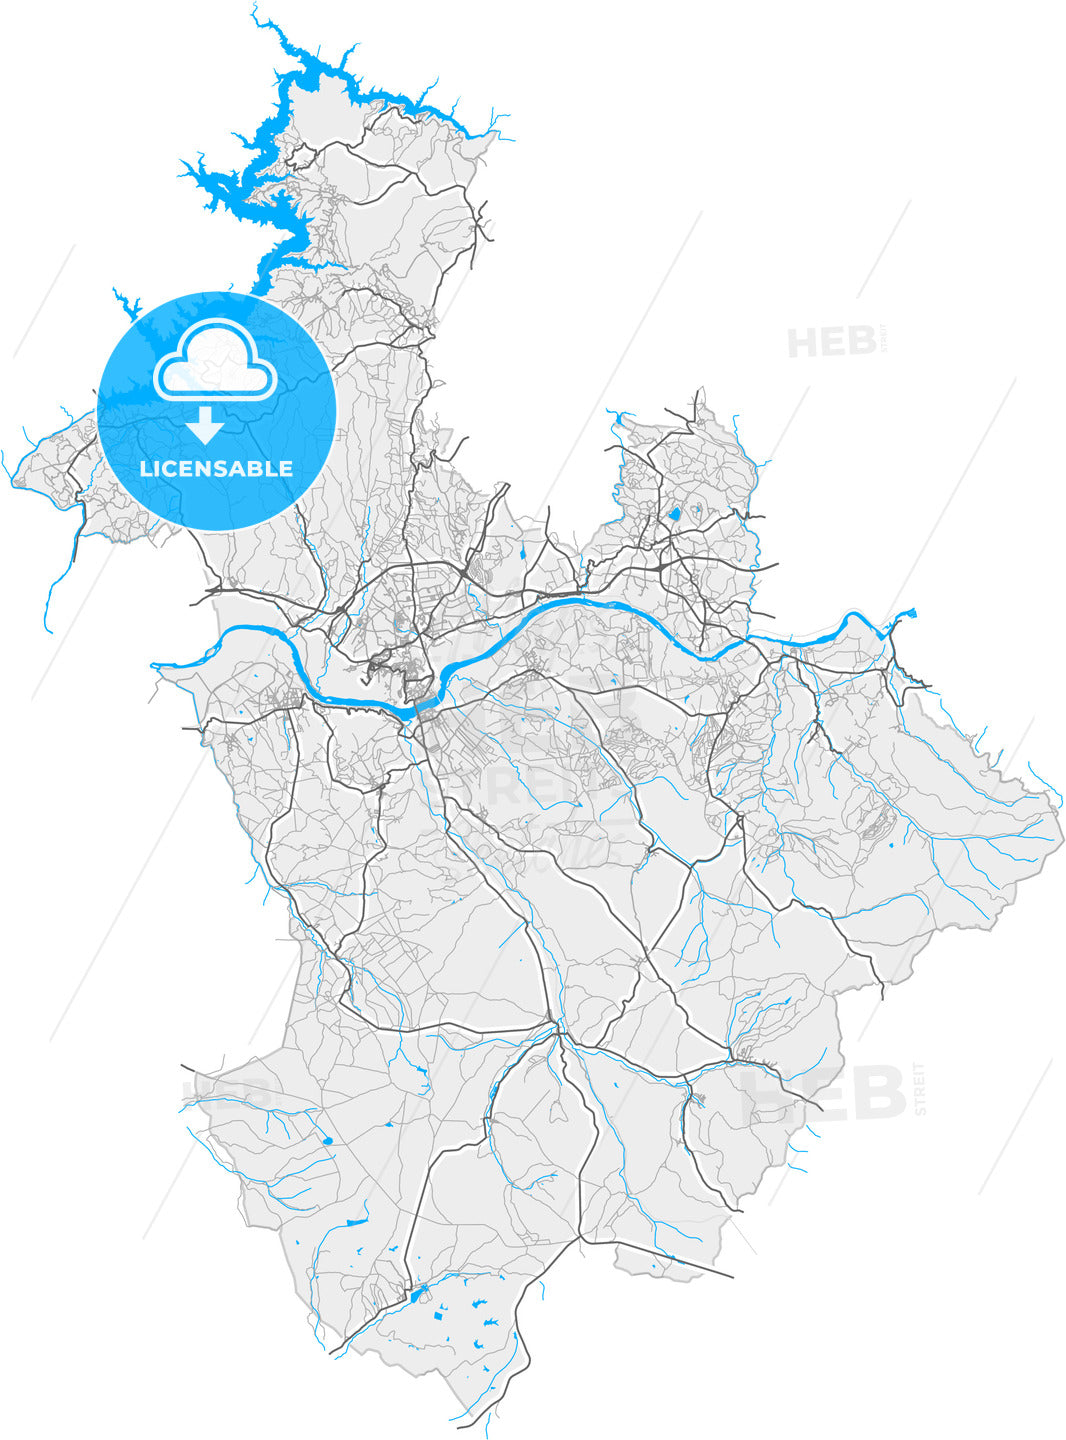 Abrantes, Santarém, Portugal, high quality vector map